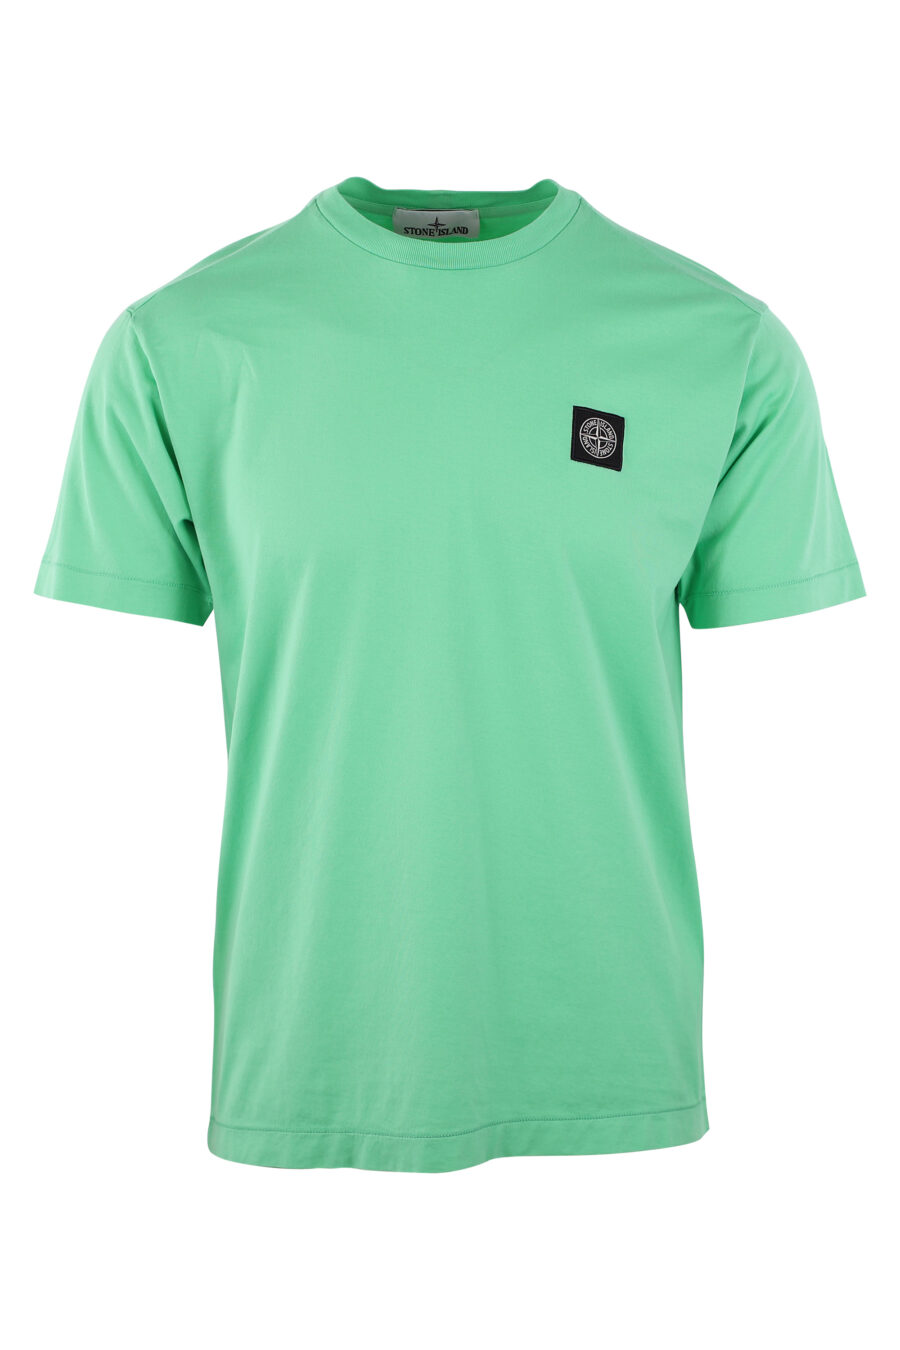 T-shirt vert clair avec logo - IMG 3139